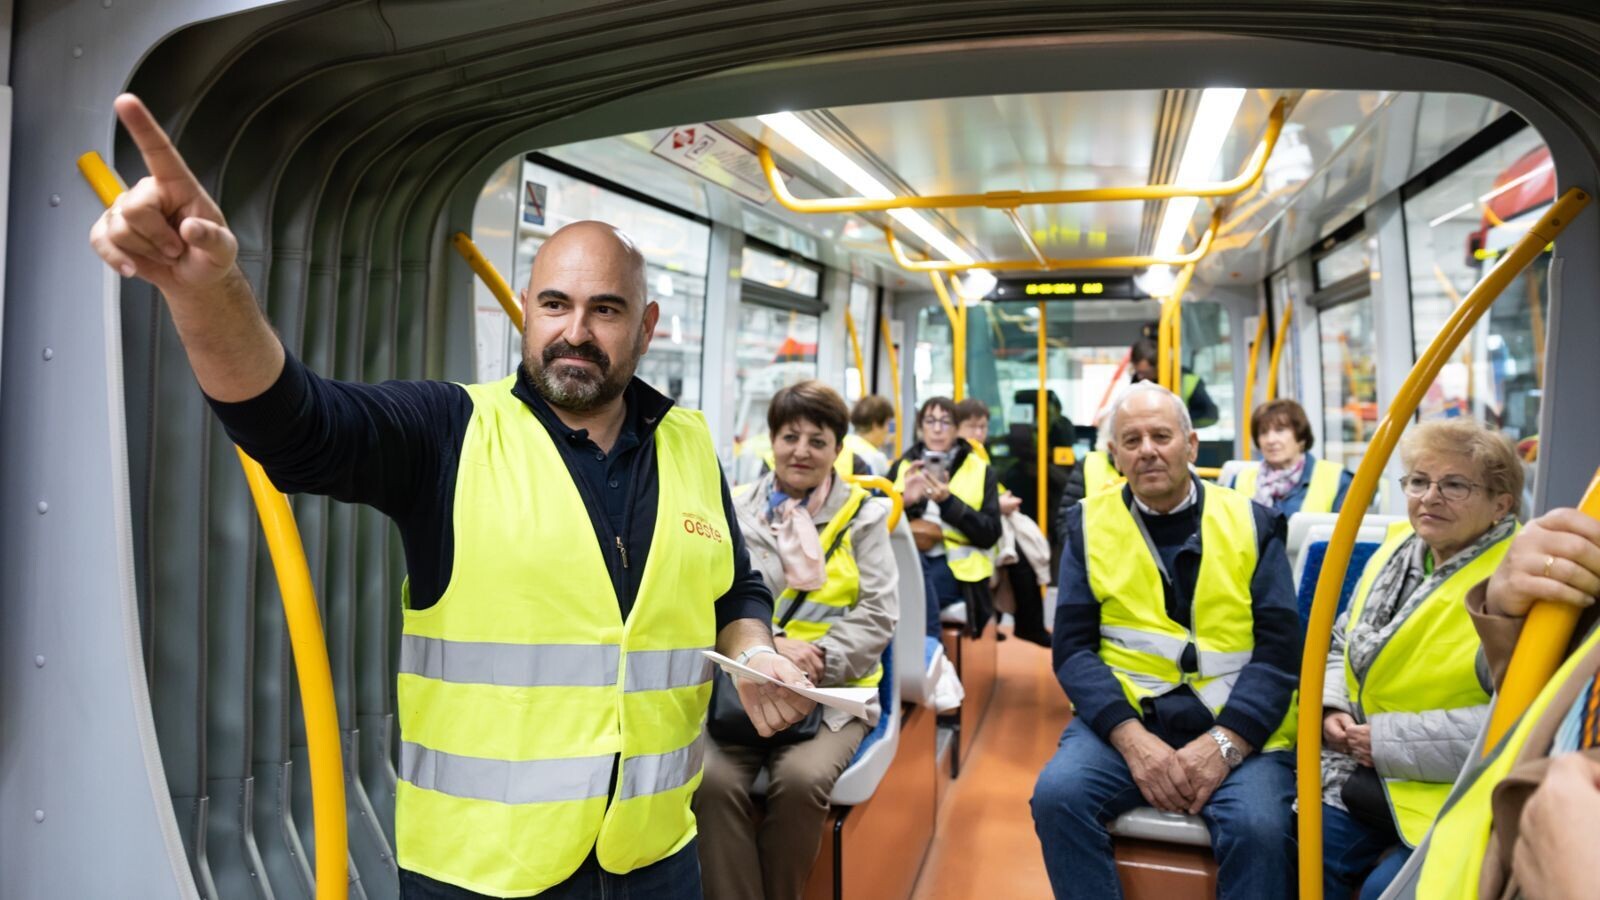 25 mayores de Pozuelo aprenden a viajar de forma segura en Metro Ligero